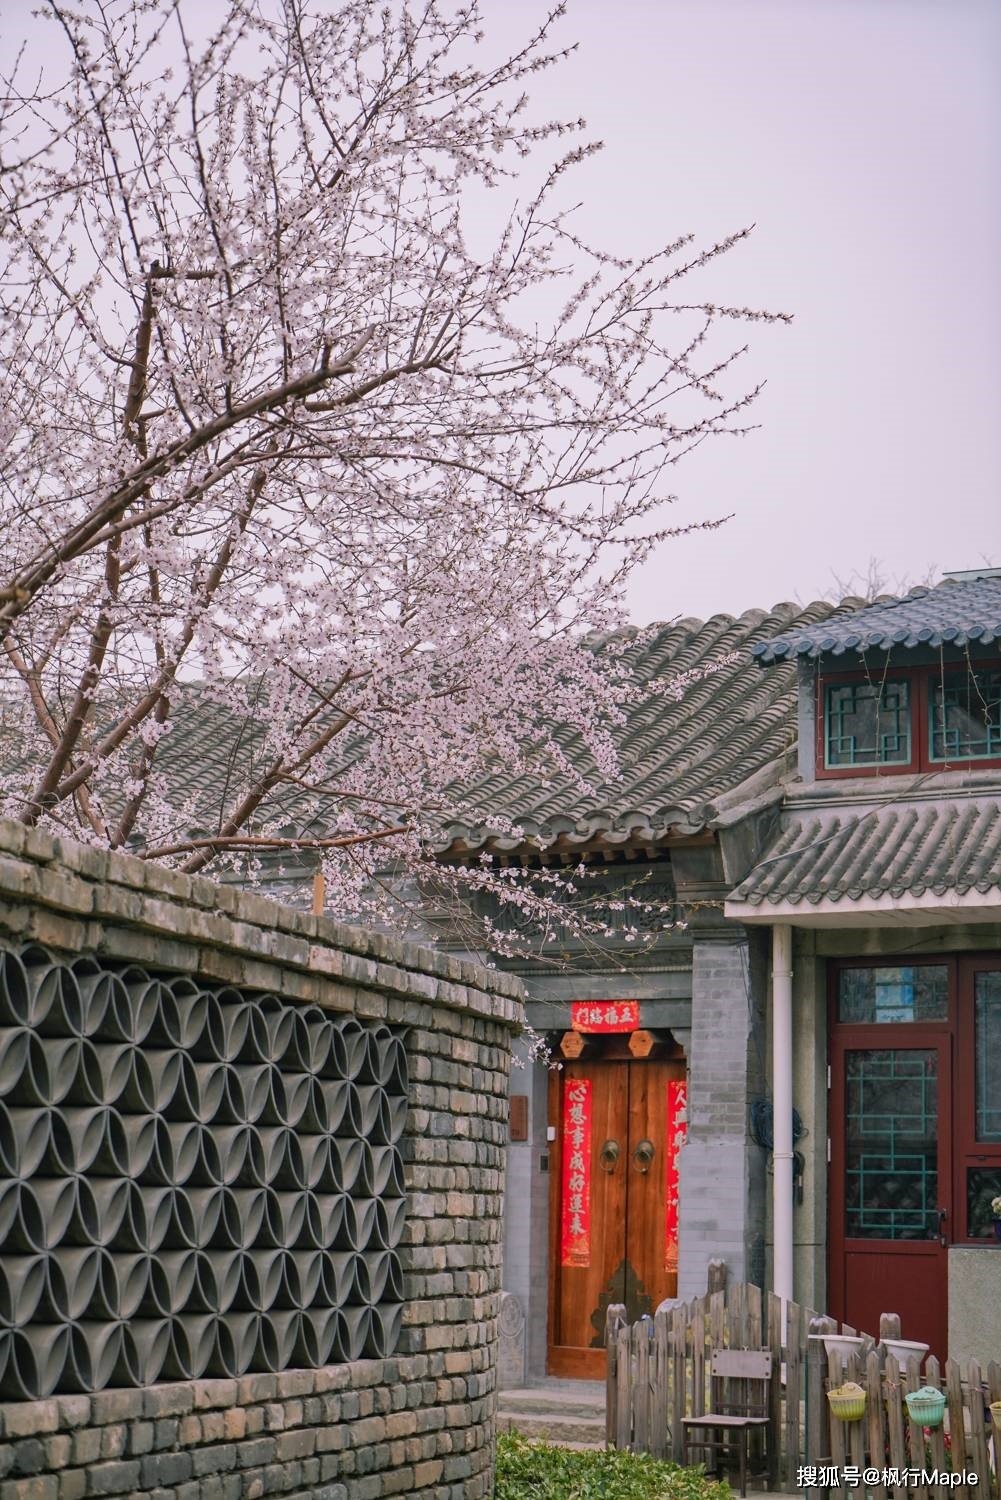 Trung Quốc: Ngắm hoa anh đào nở rộ ven sông ở Bắc Kinh